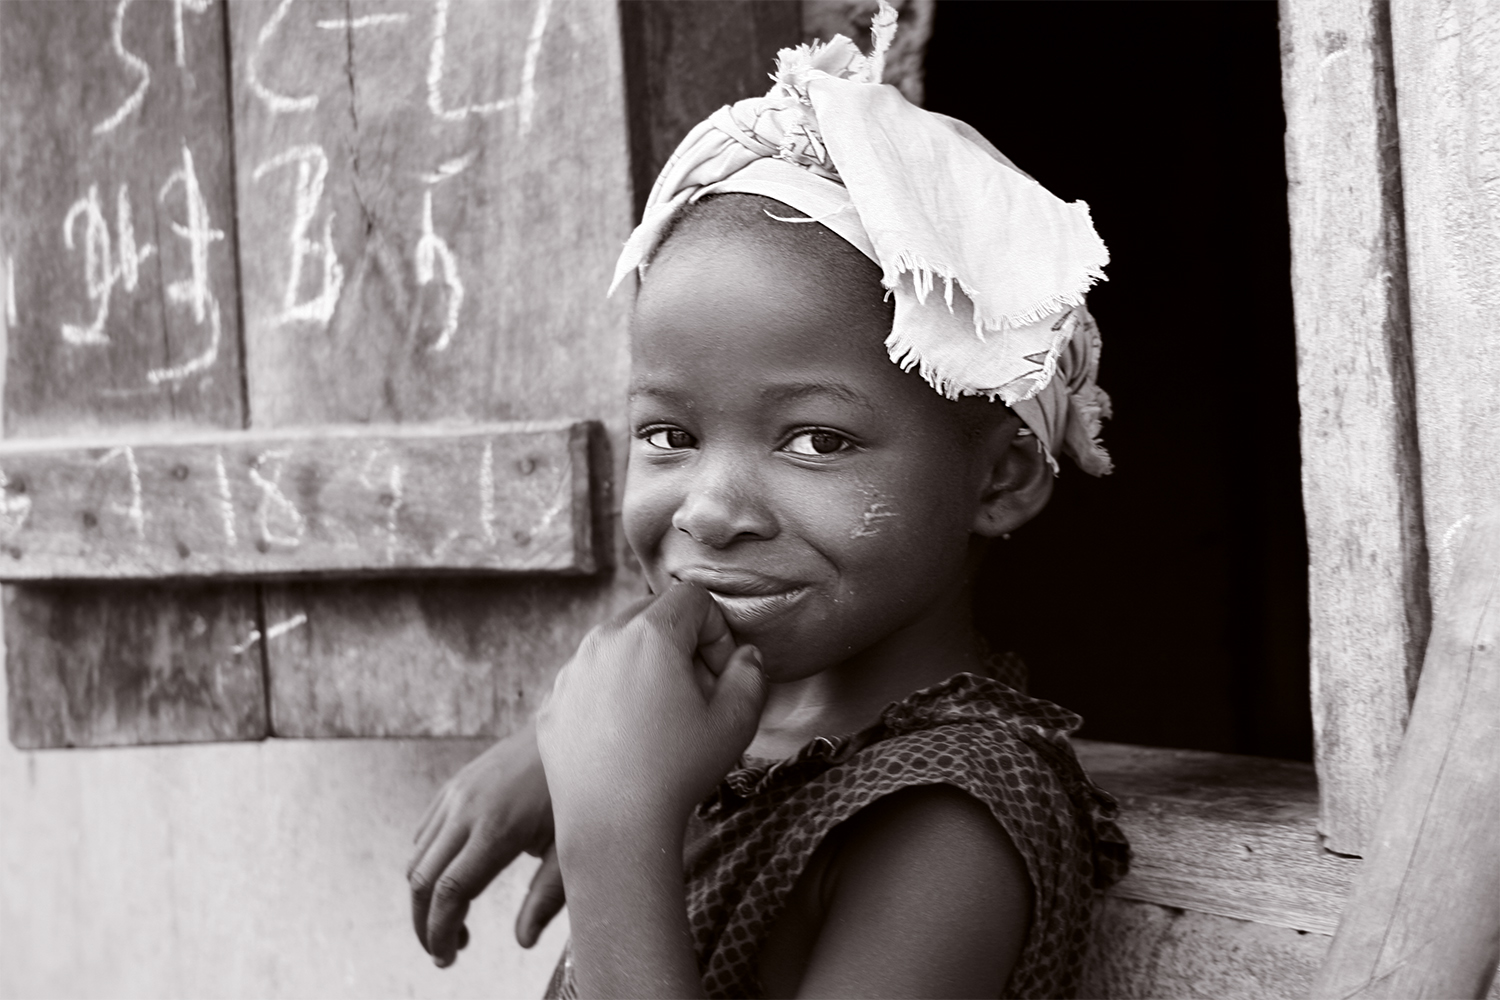 La mirada y la media sonrisa de esta niña angoleña llega al corazón.